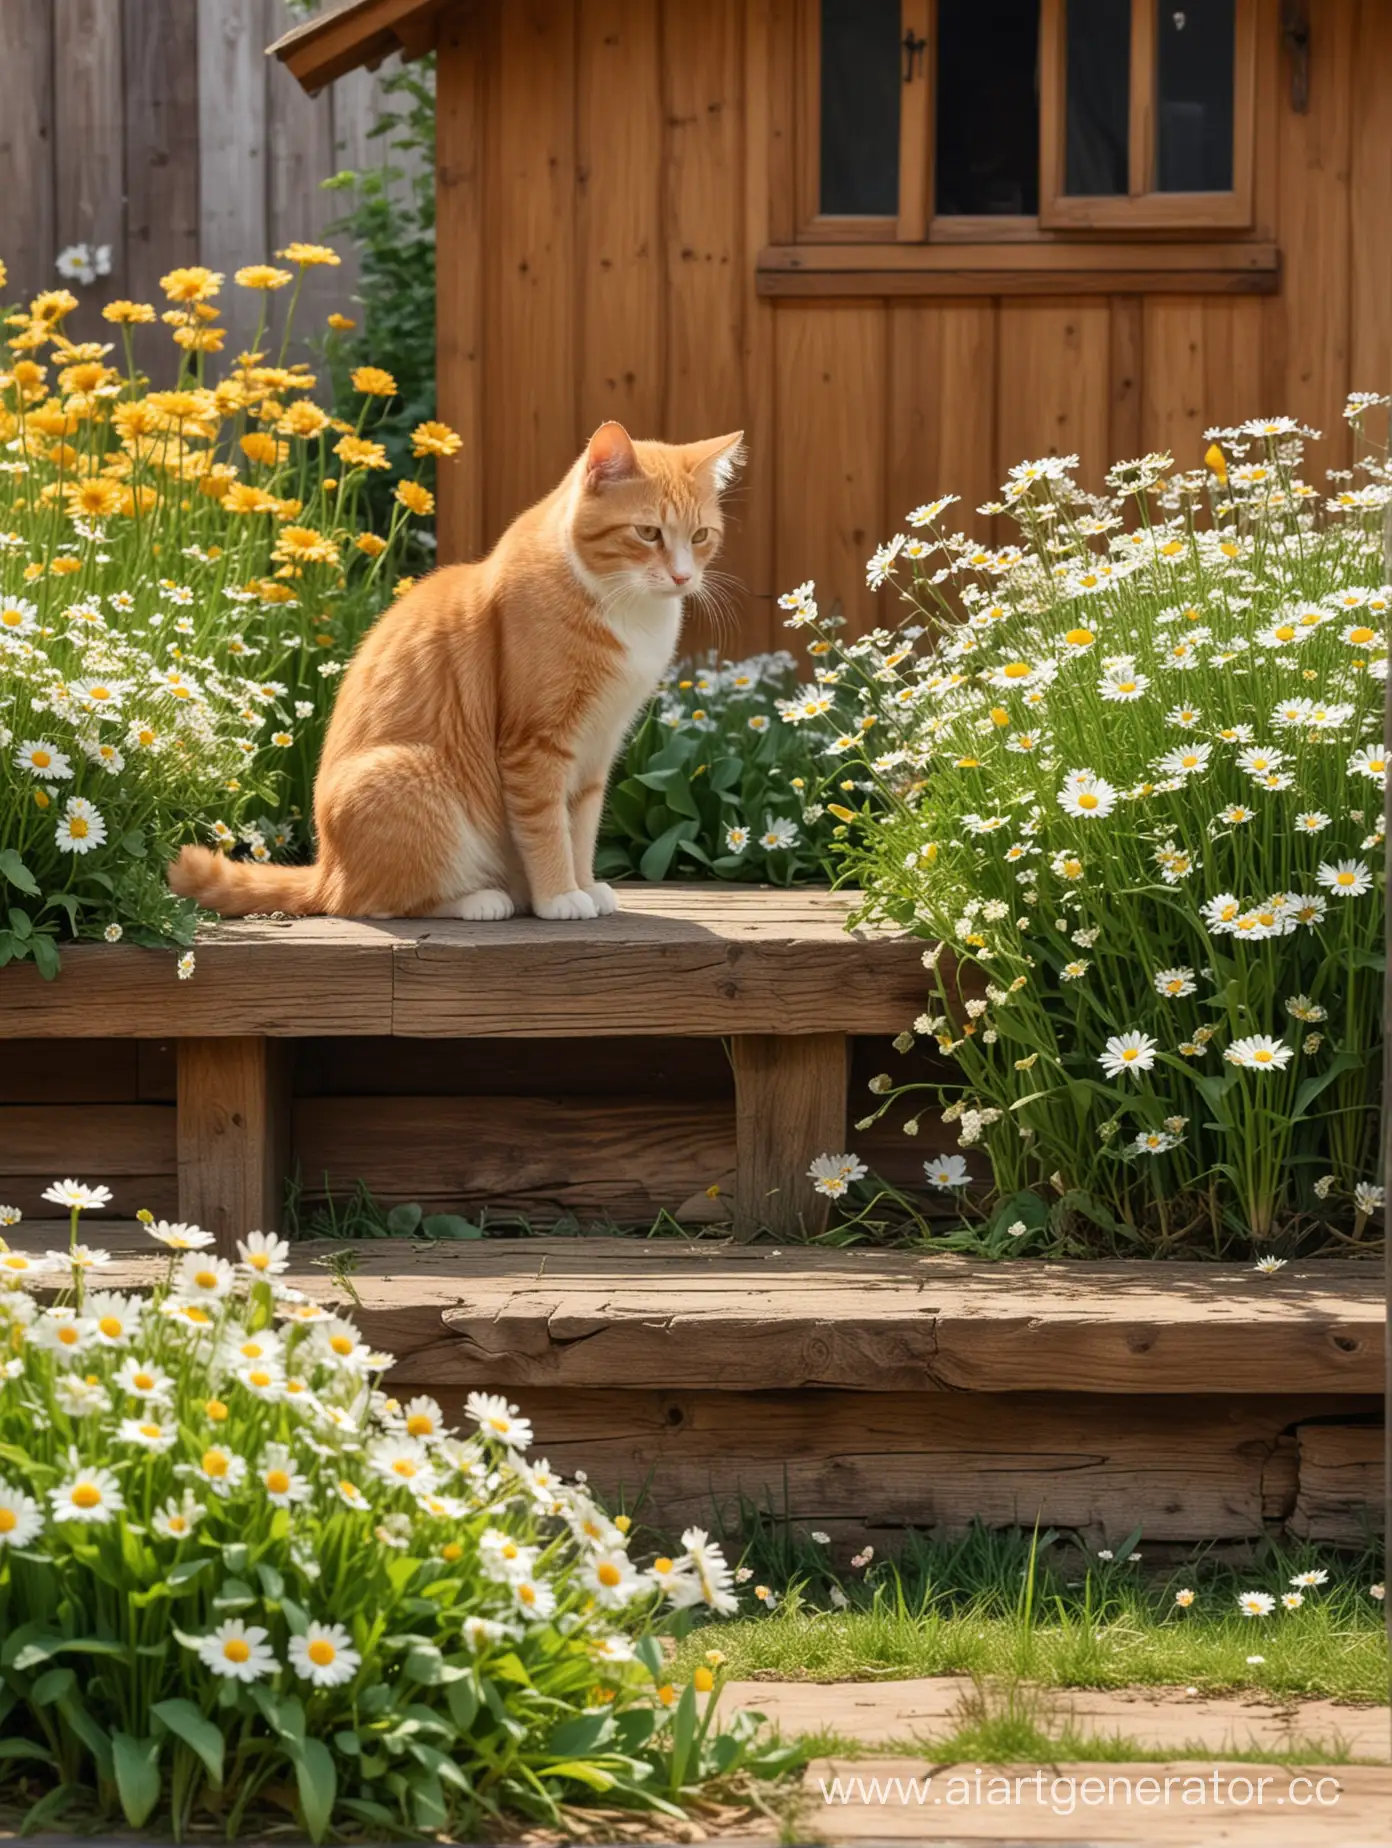 Маленький мальчик сидит на лавочке, рядом умывается рыжий кот, по бокам растут ромашки, далеко на фоне деревянный дом, фон сильно размыт, очень реалистично